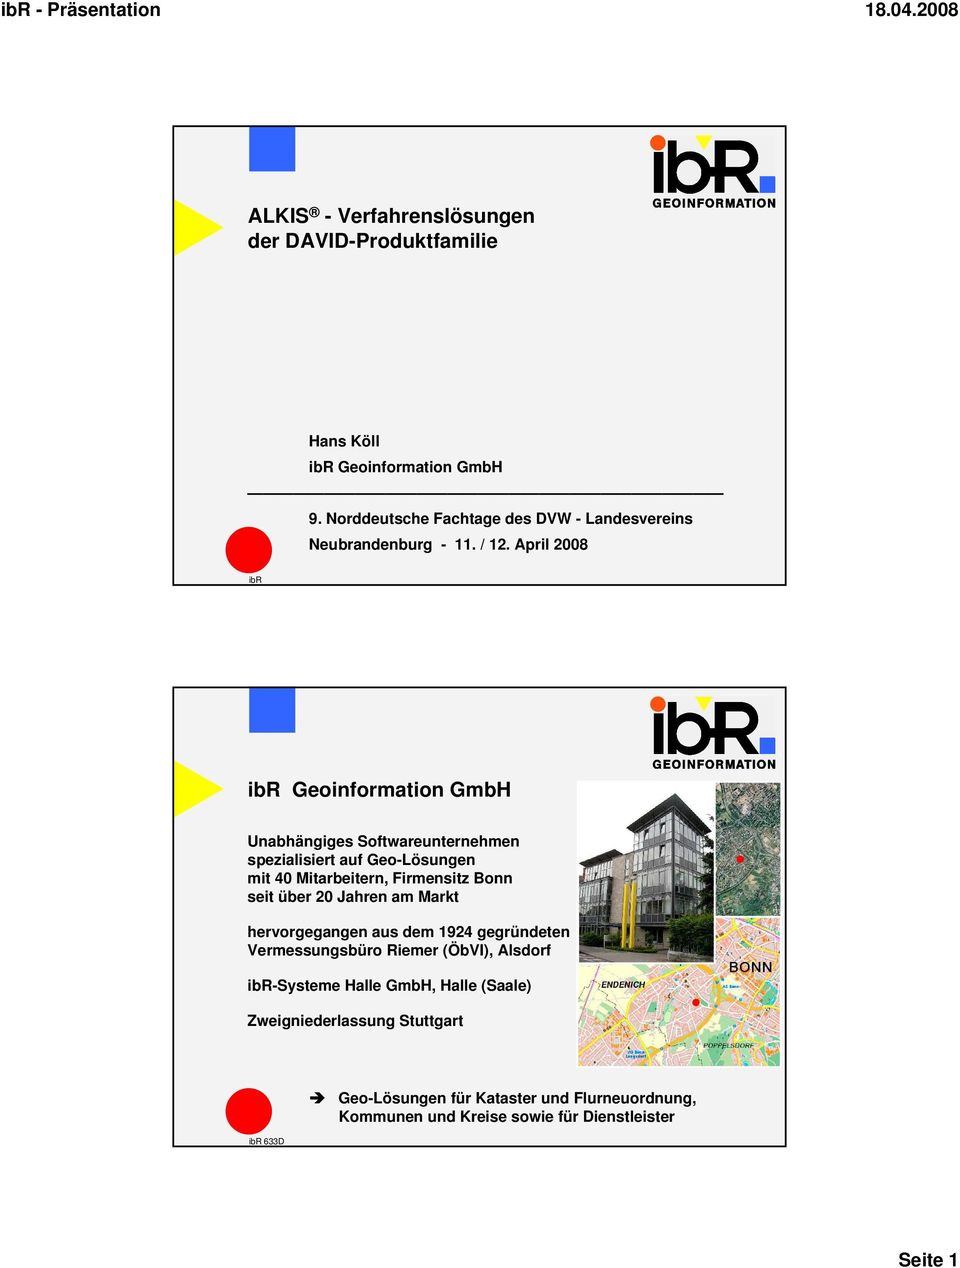 April 2008 ibr ibr Geoinformation GmbH Unabhängiges Softwareunternehmen spezialisiert auf Geo-Lösungen mit 40 Mitarbeitern, Firmensitz Bonn seit